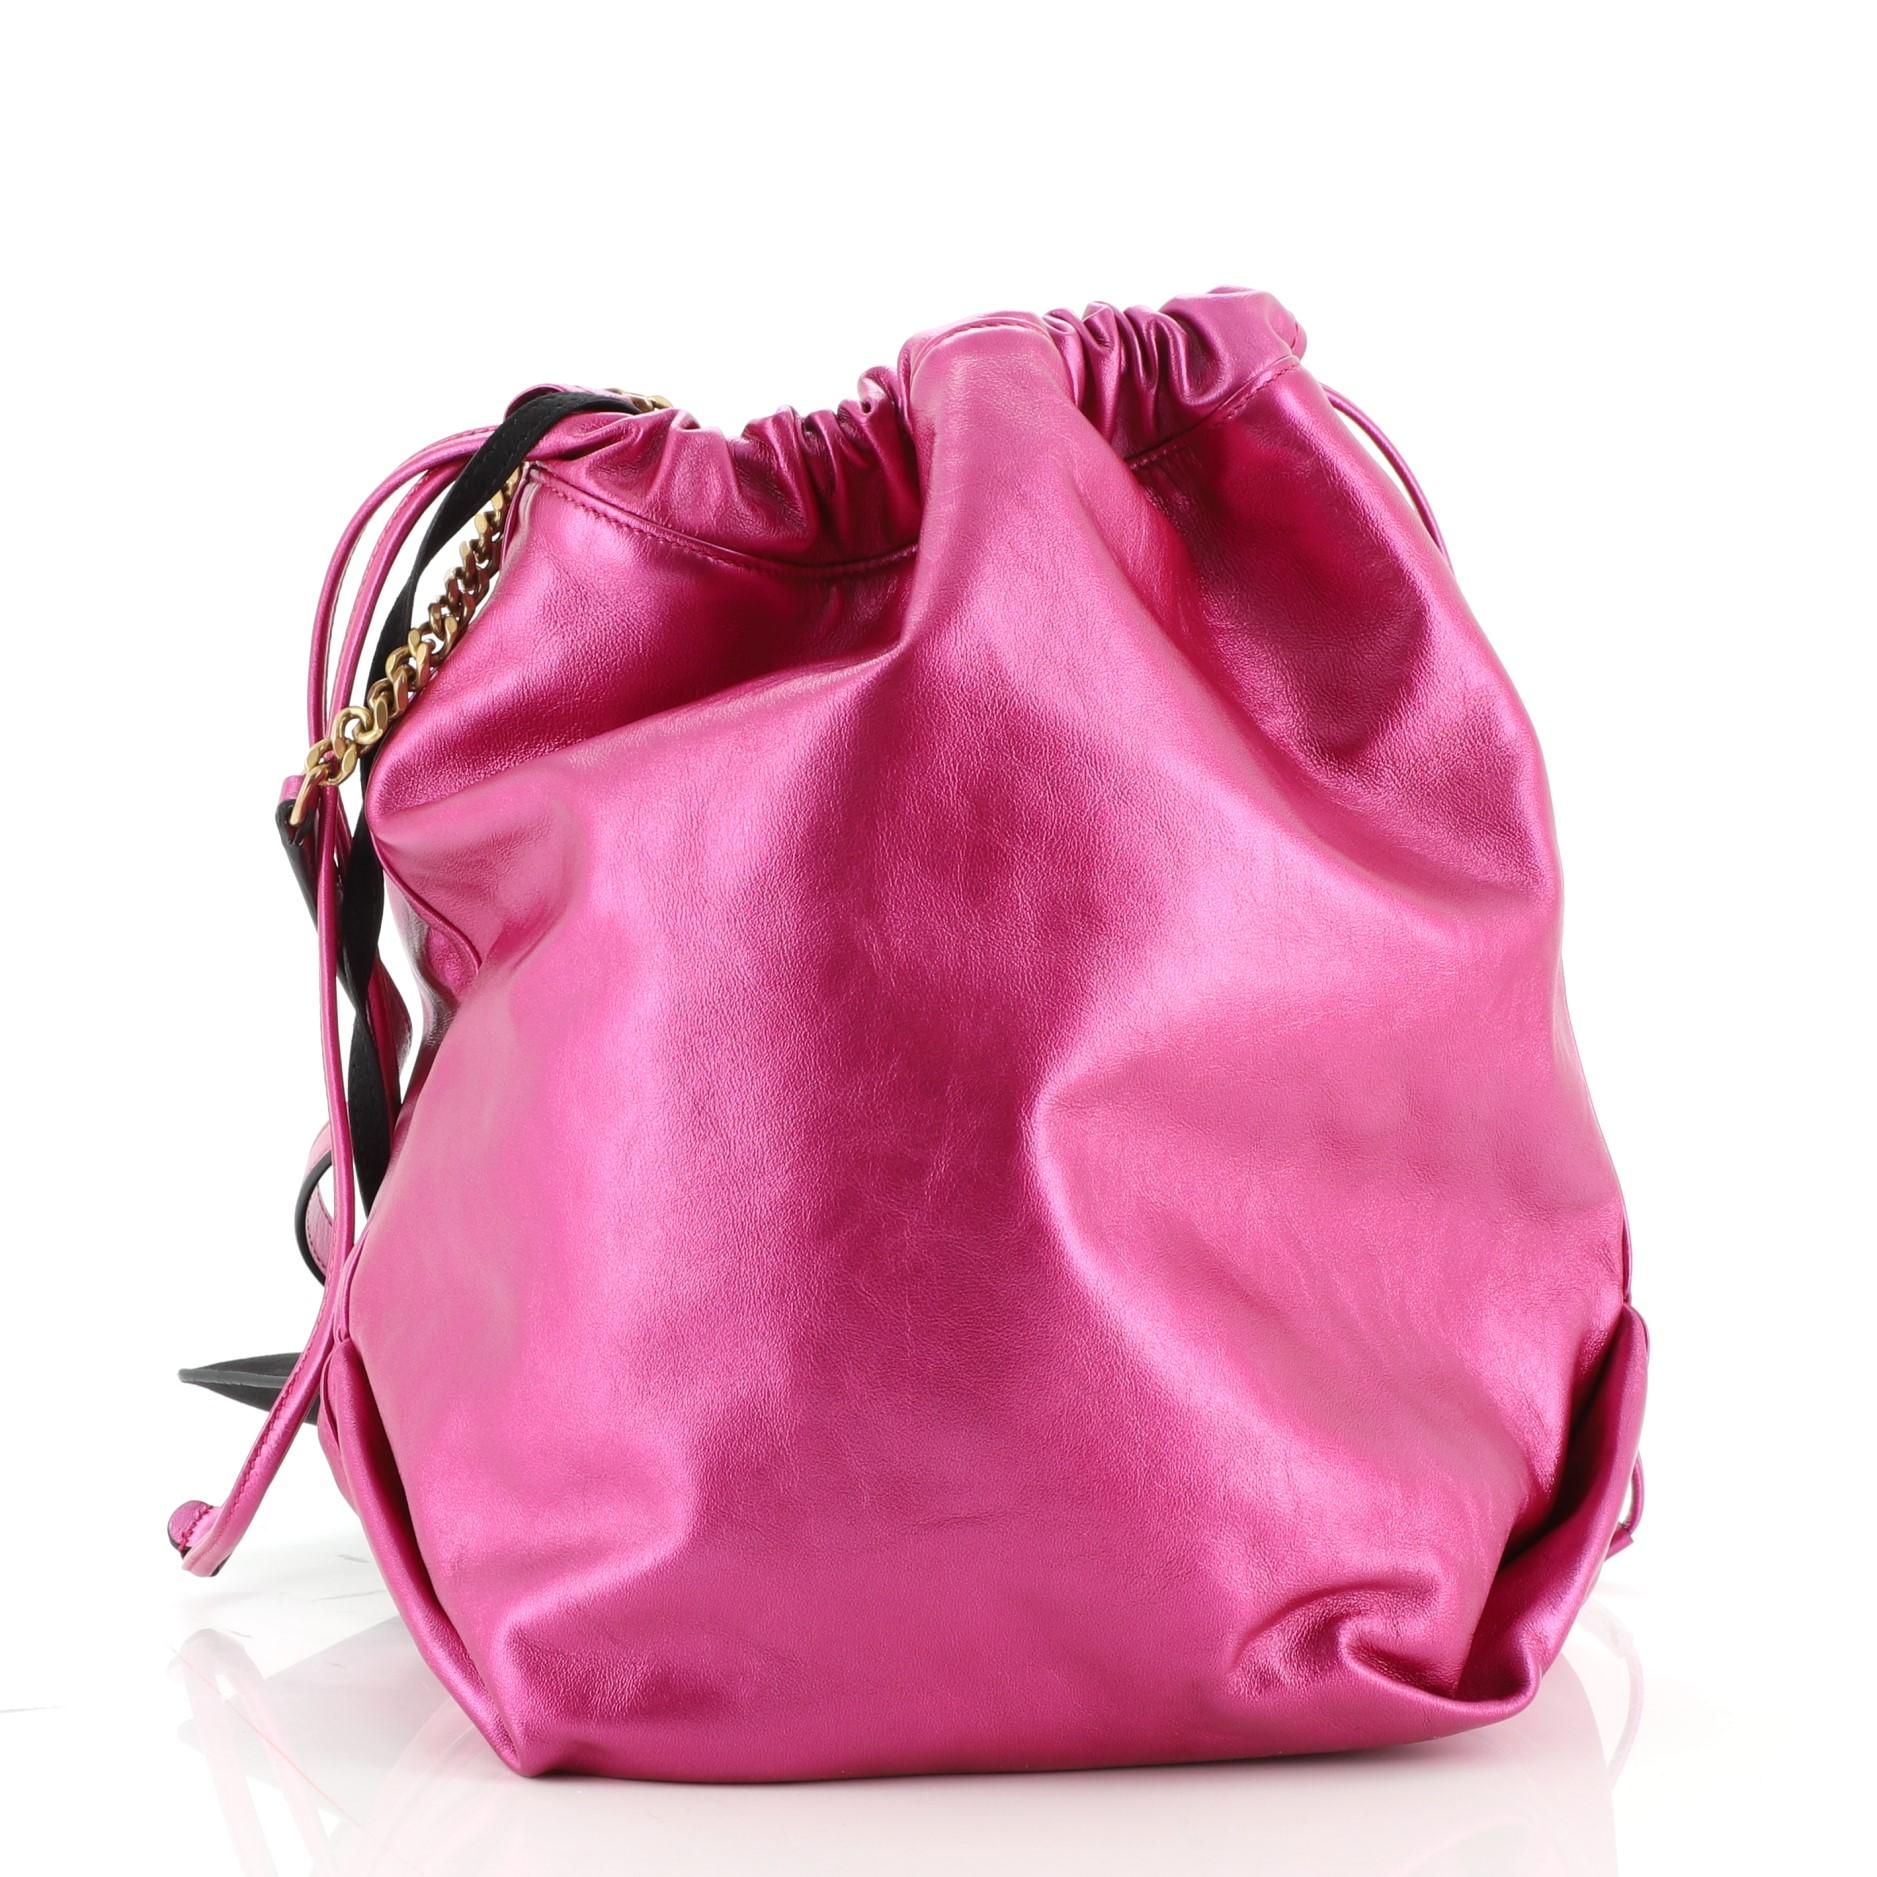 metallic pink ysl bag